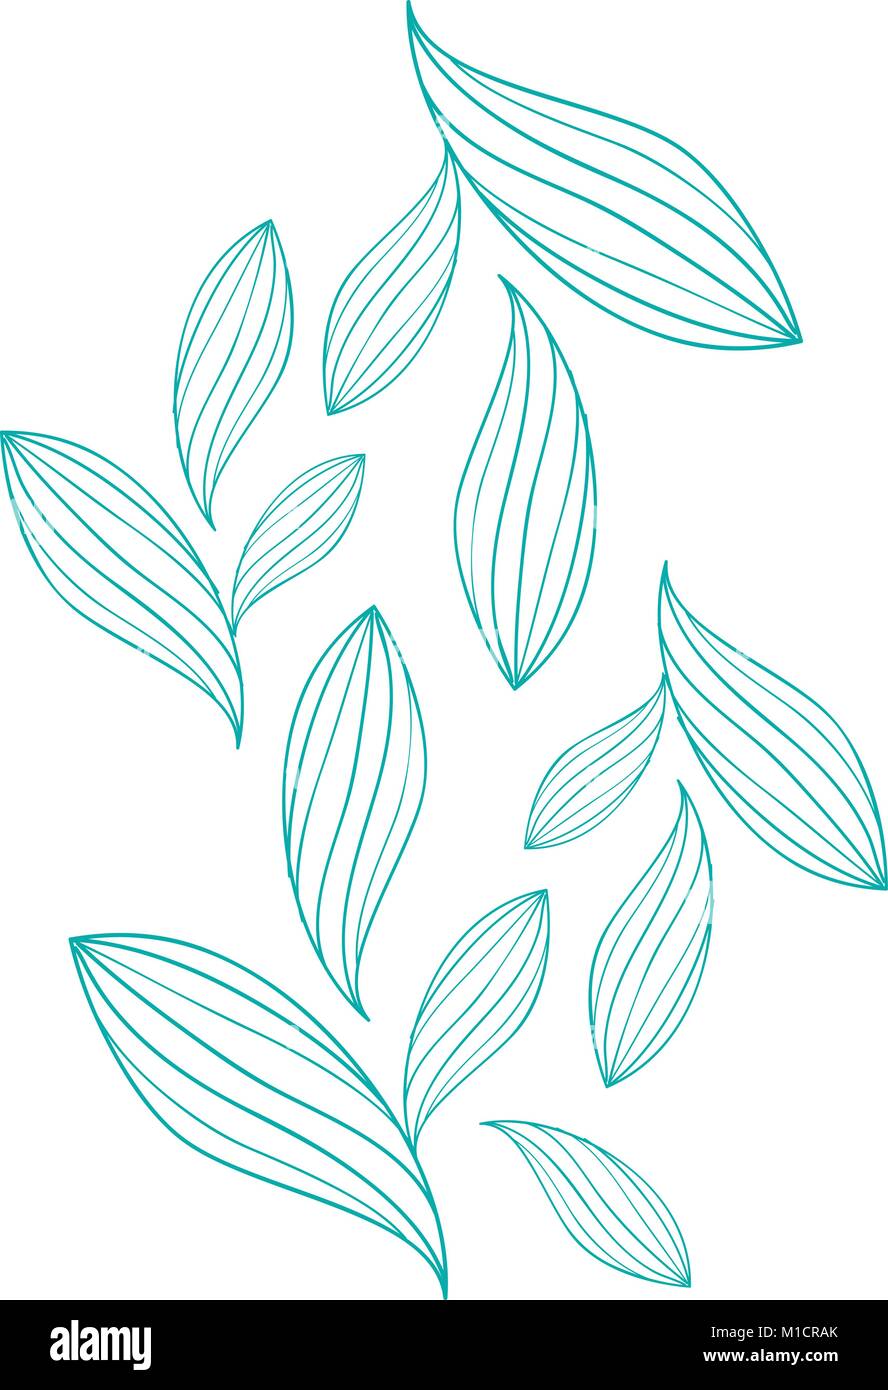 Elegante Blätter Vektor nahtlose Muster Stock Vektor